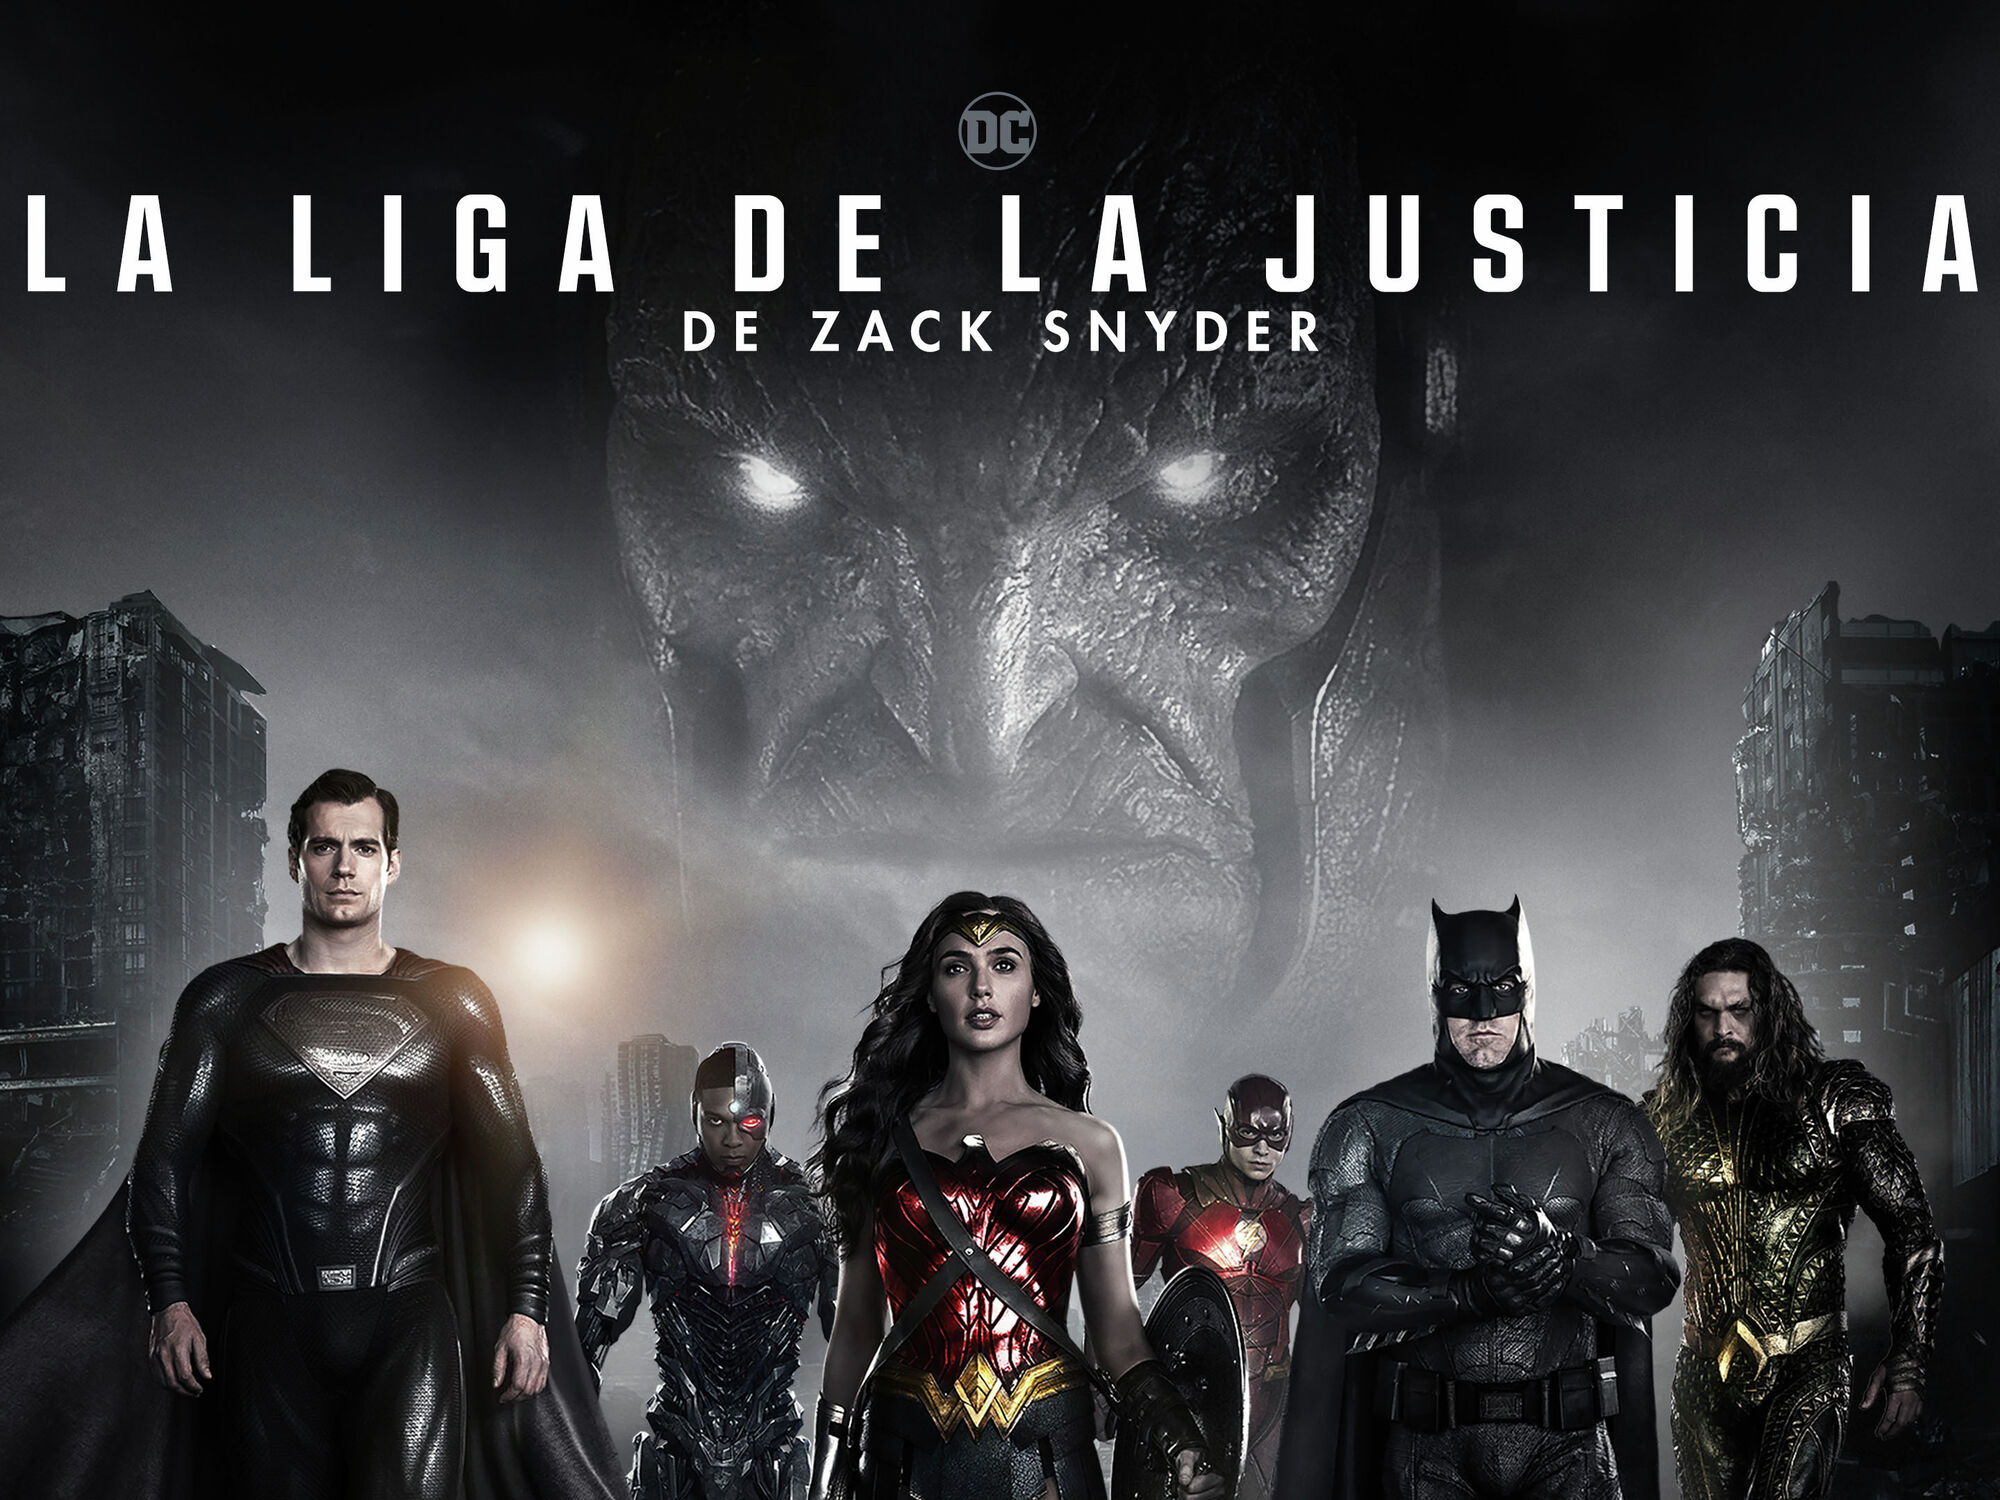 La Liga de la Justicia de Zack Snyder' en el Videoclub de Orange TV